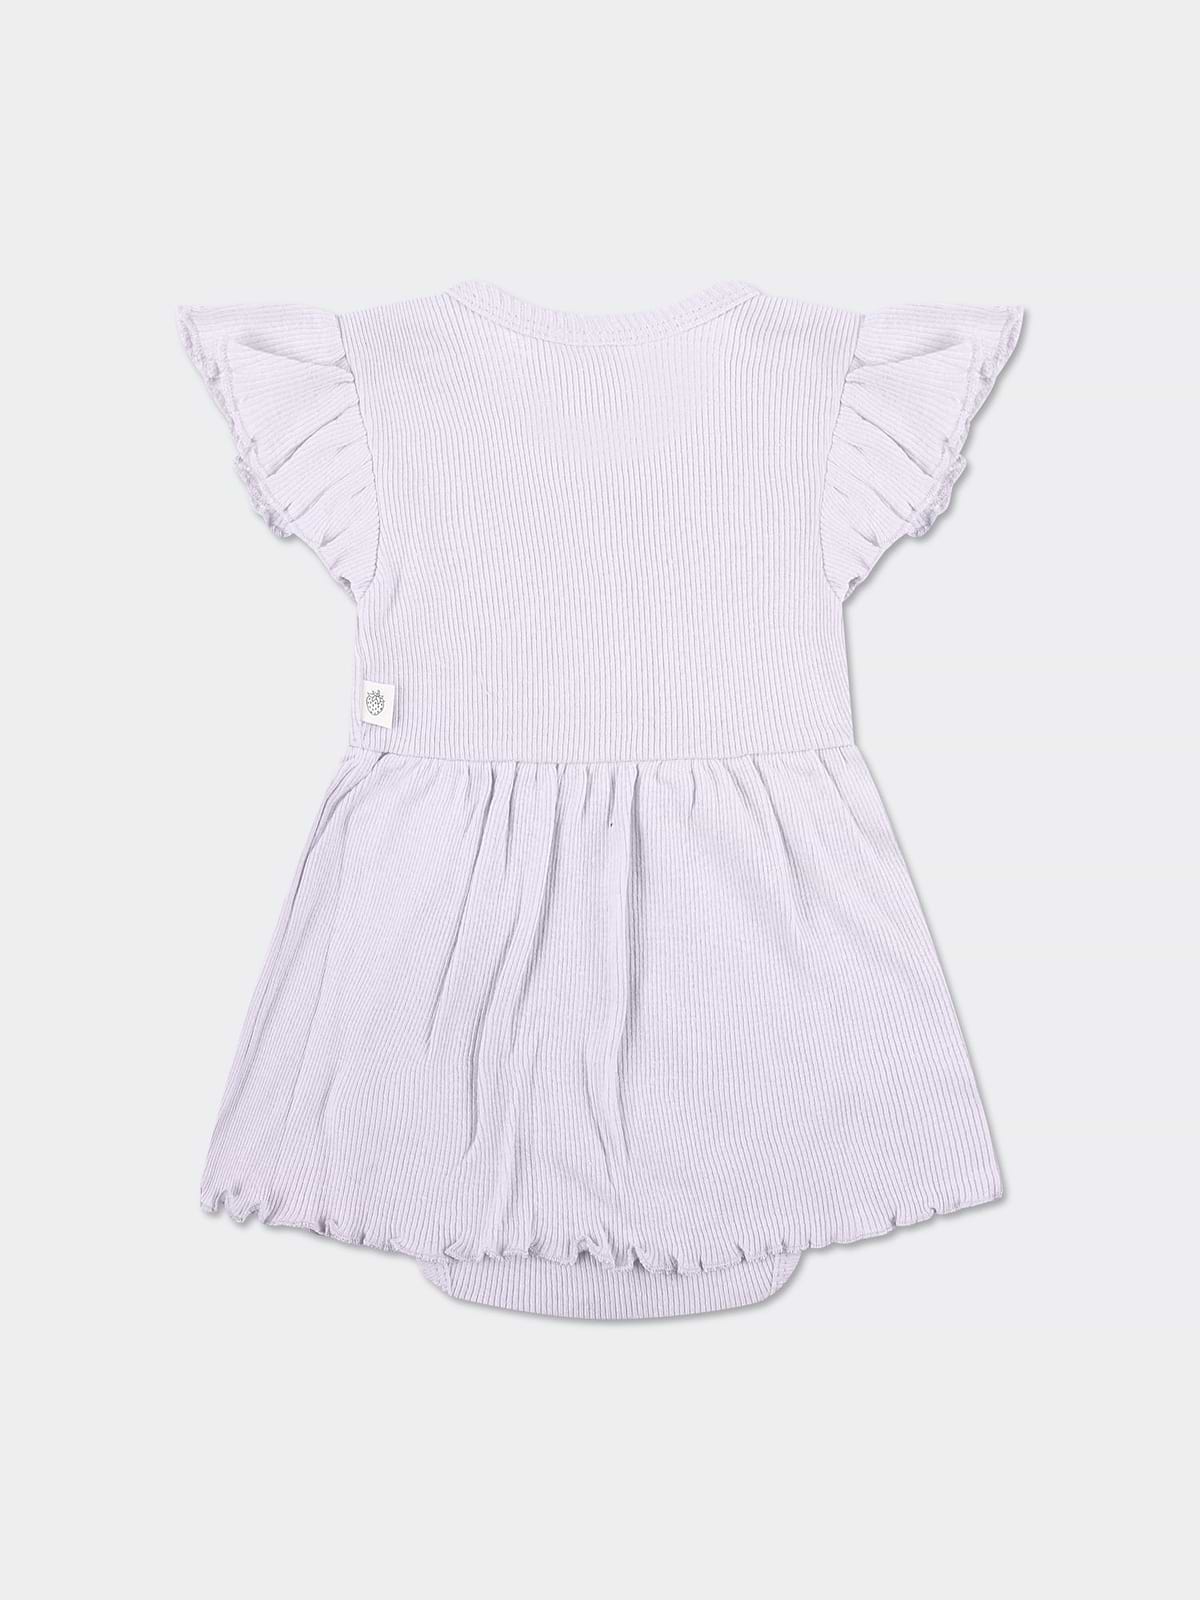 שמלת ריב עם בגד גוף פנימי / תינוקות